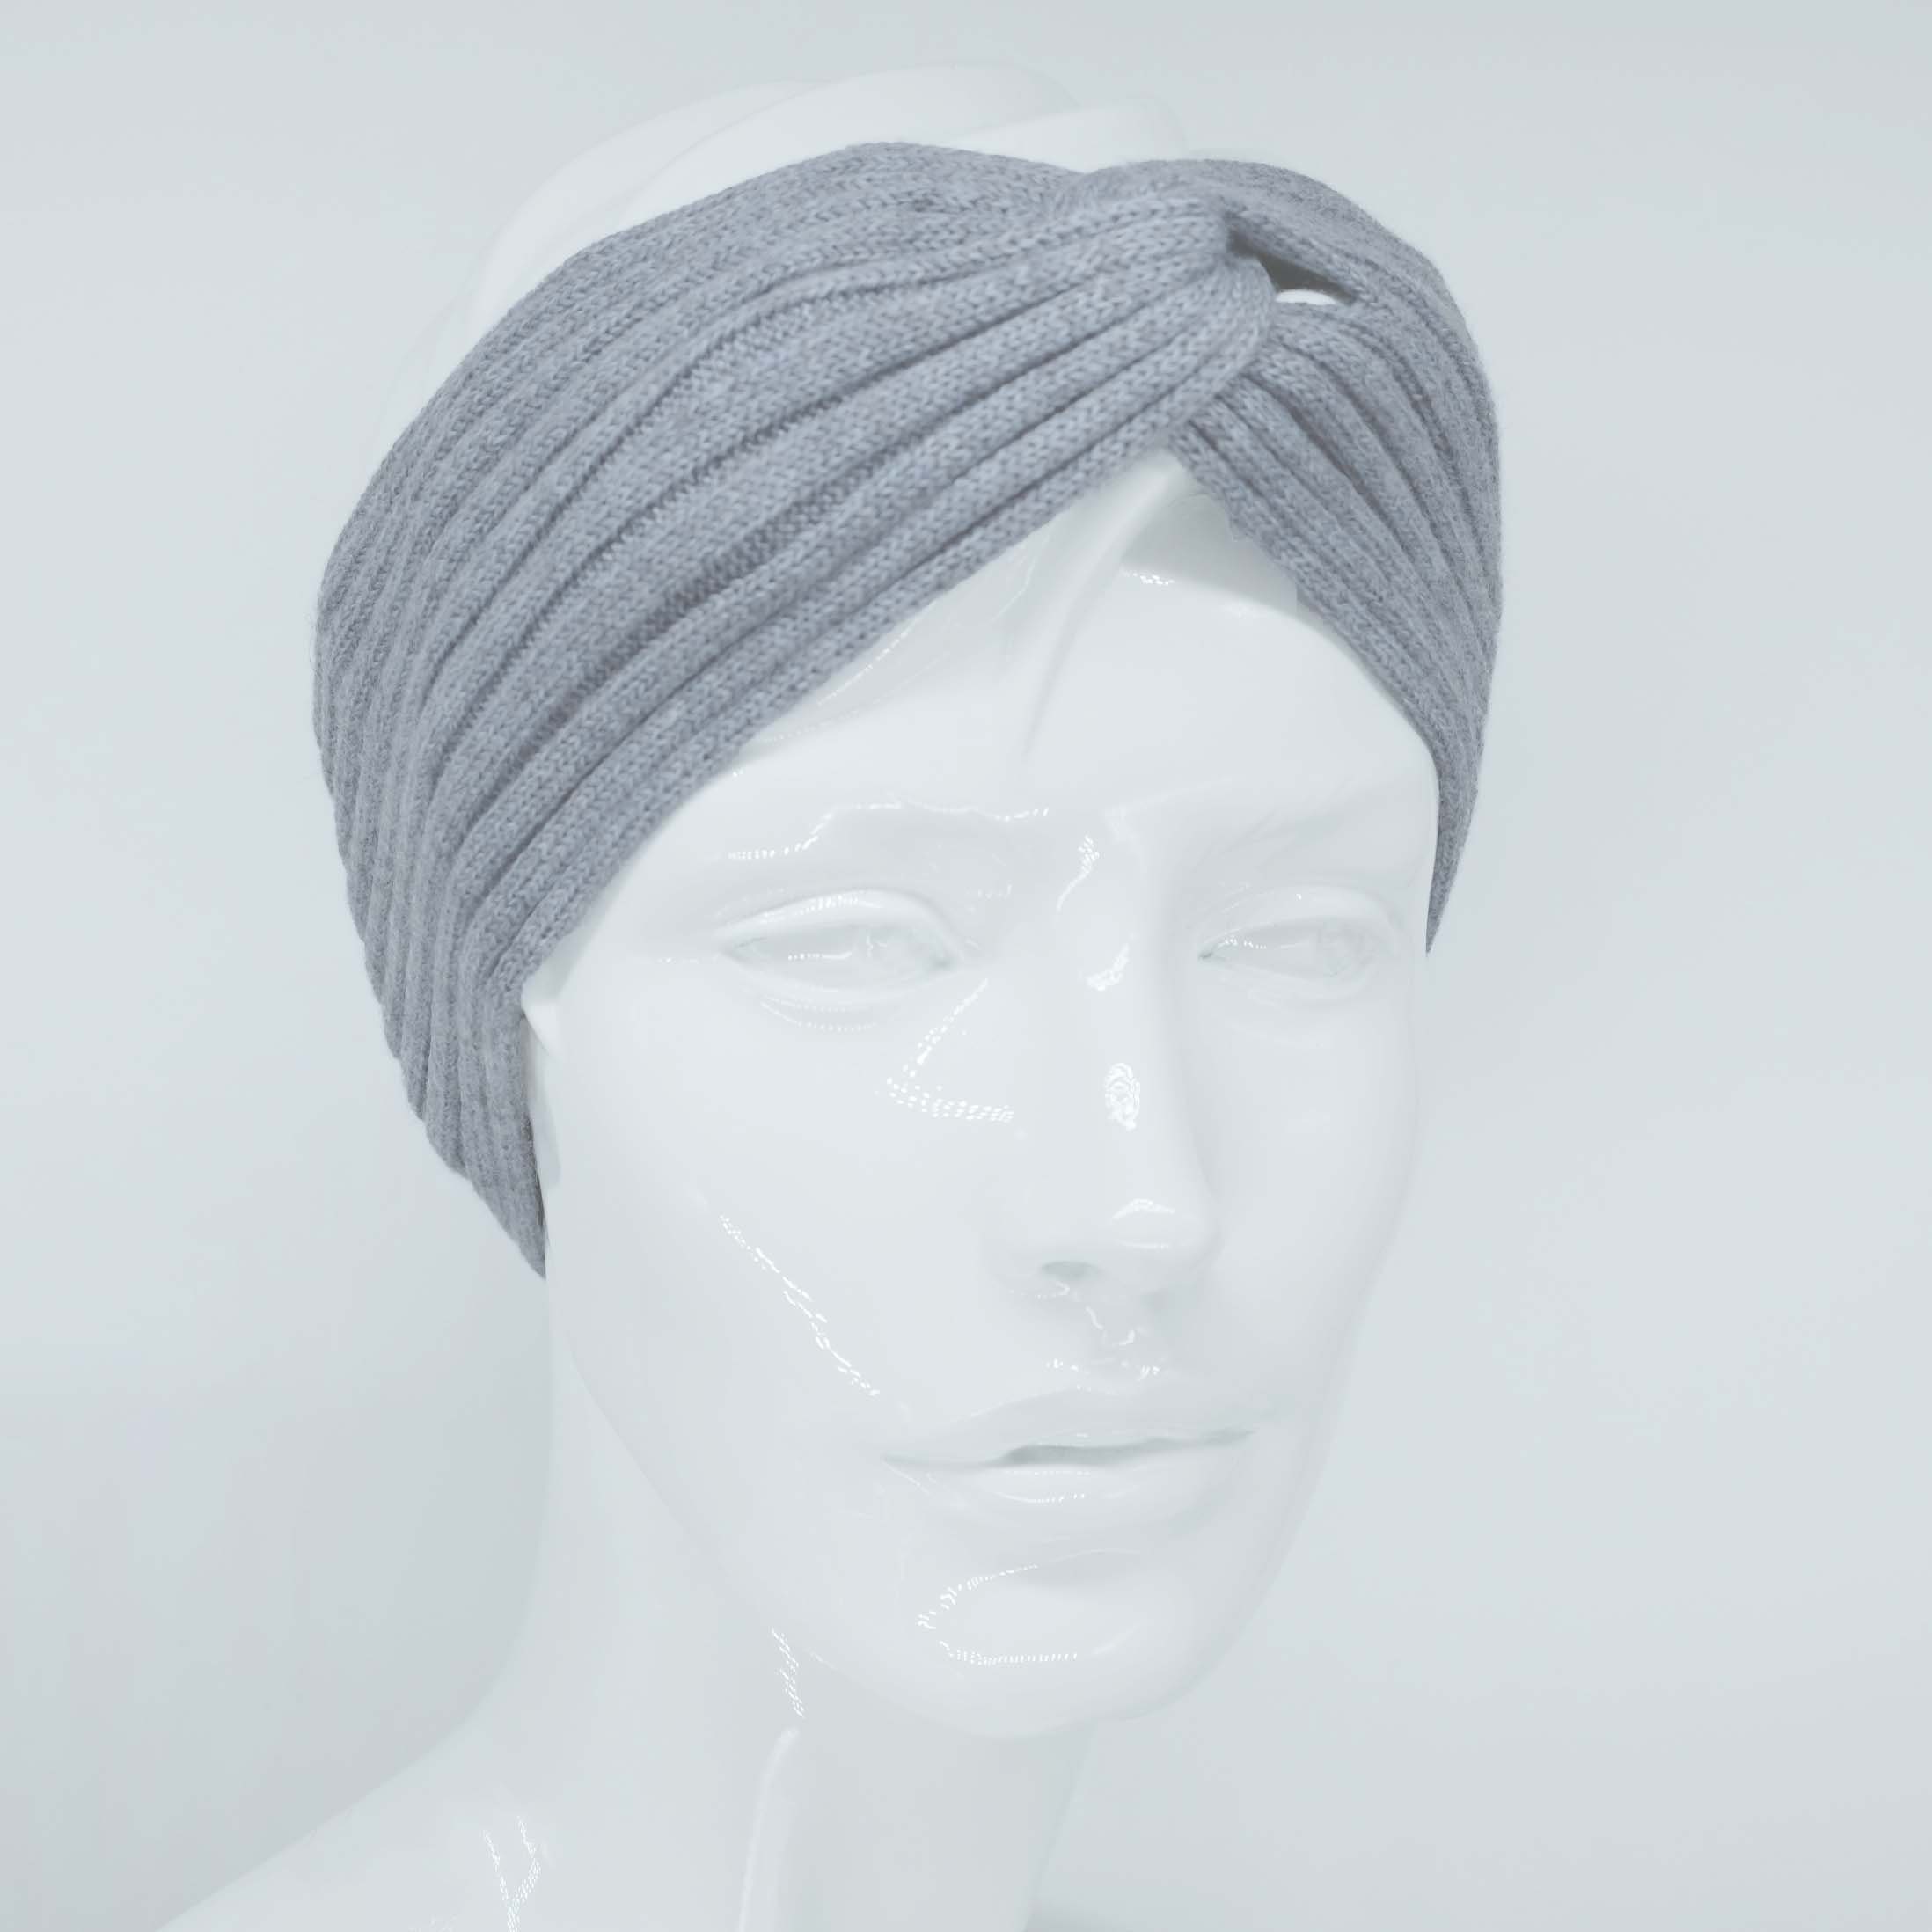 BEAZZ Stirnband Stirnband Ohrenwärmer Damen Winter 100% WOLLE Merino Feinstrick, warm und weich hellgrau meliert